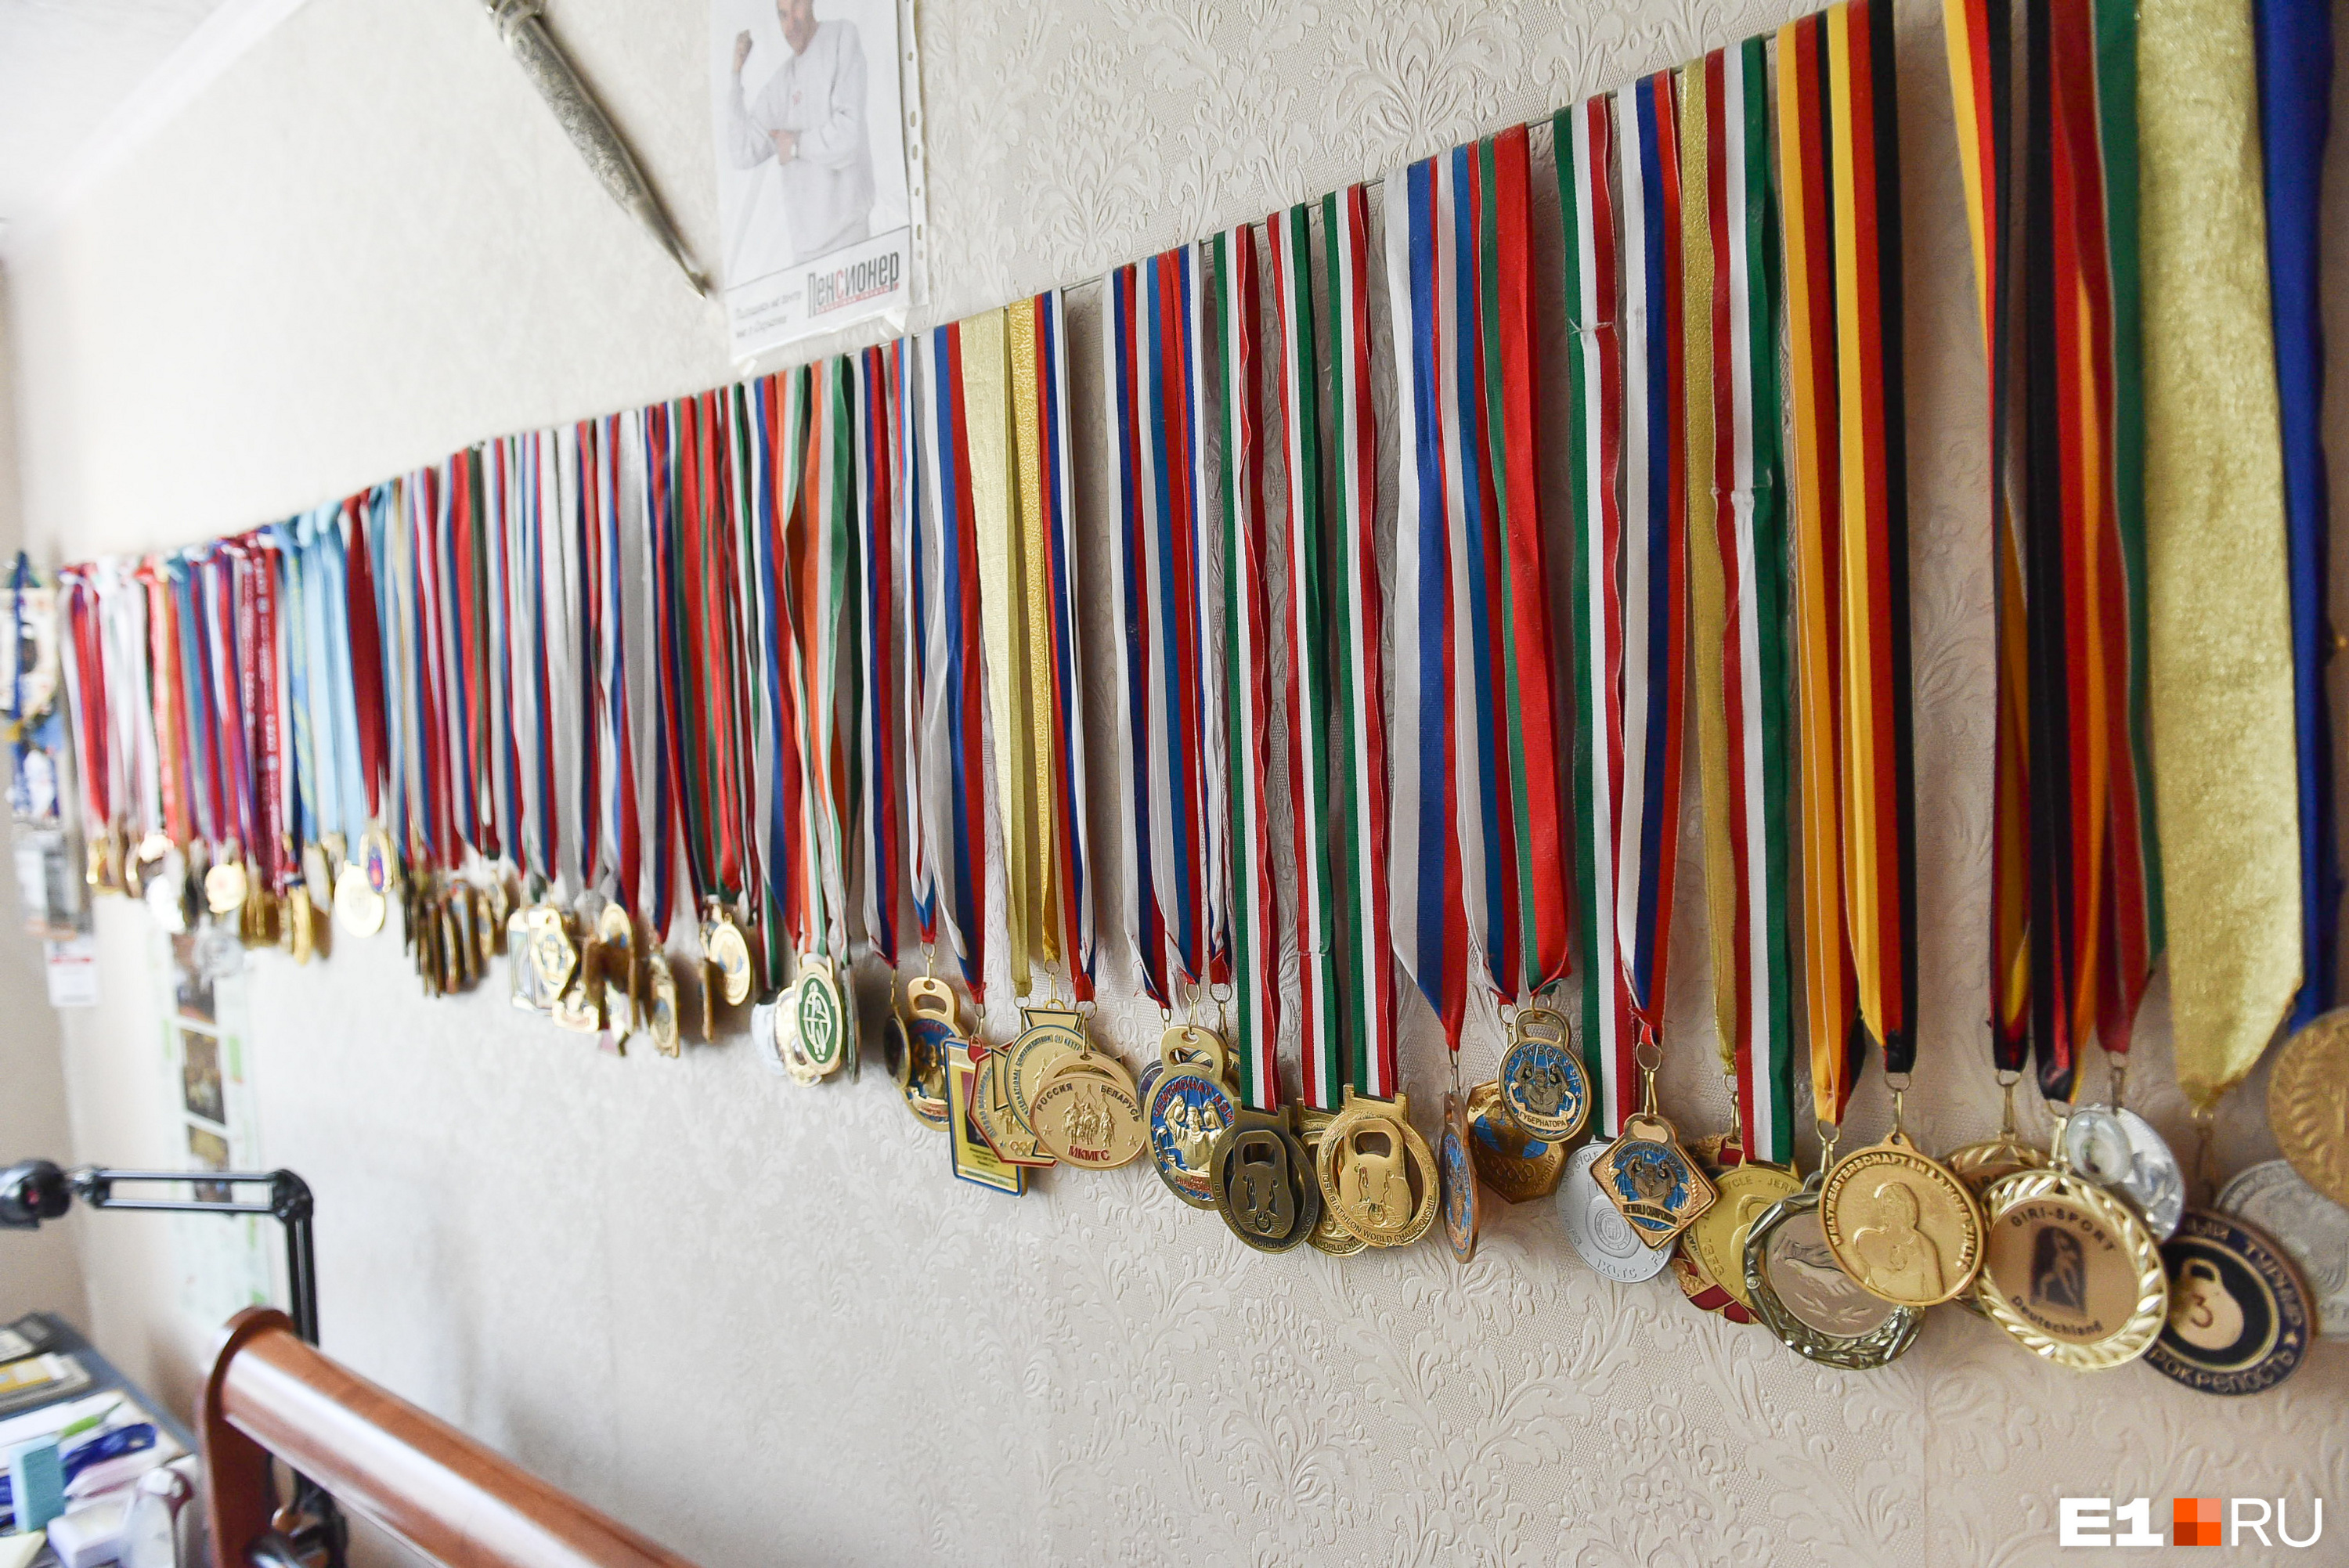 У Ашихмина около ста медалей, точное количество он не знает